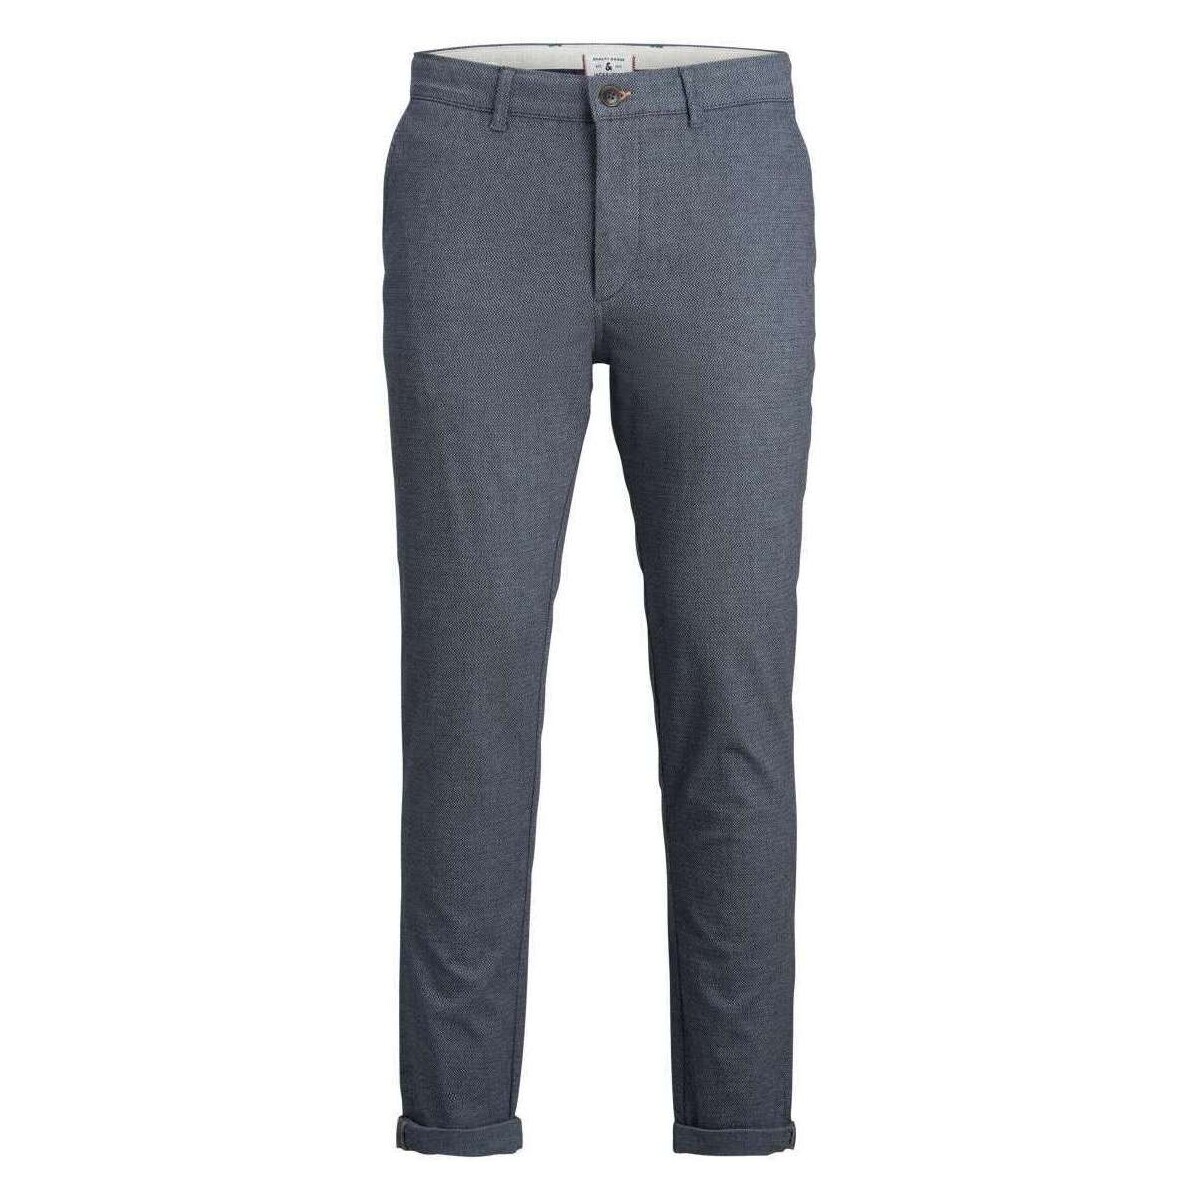 Vêtements Homme Pantalons 5 poches Premium By Livraison gratuite et retour offert 156350VTAH23 Bleu